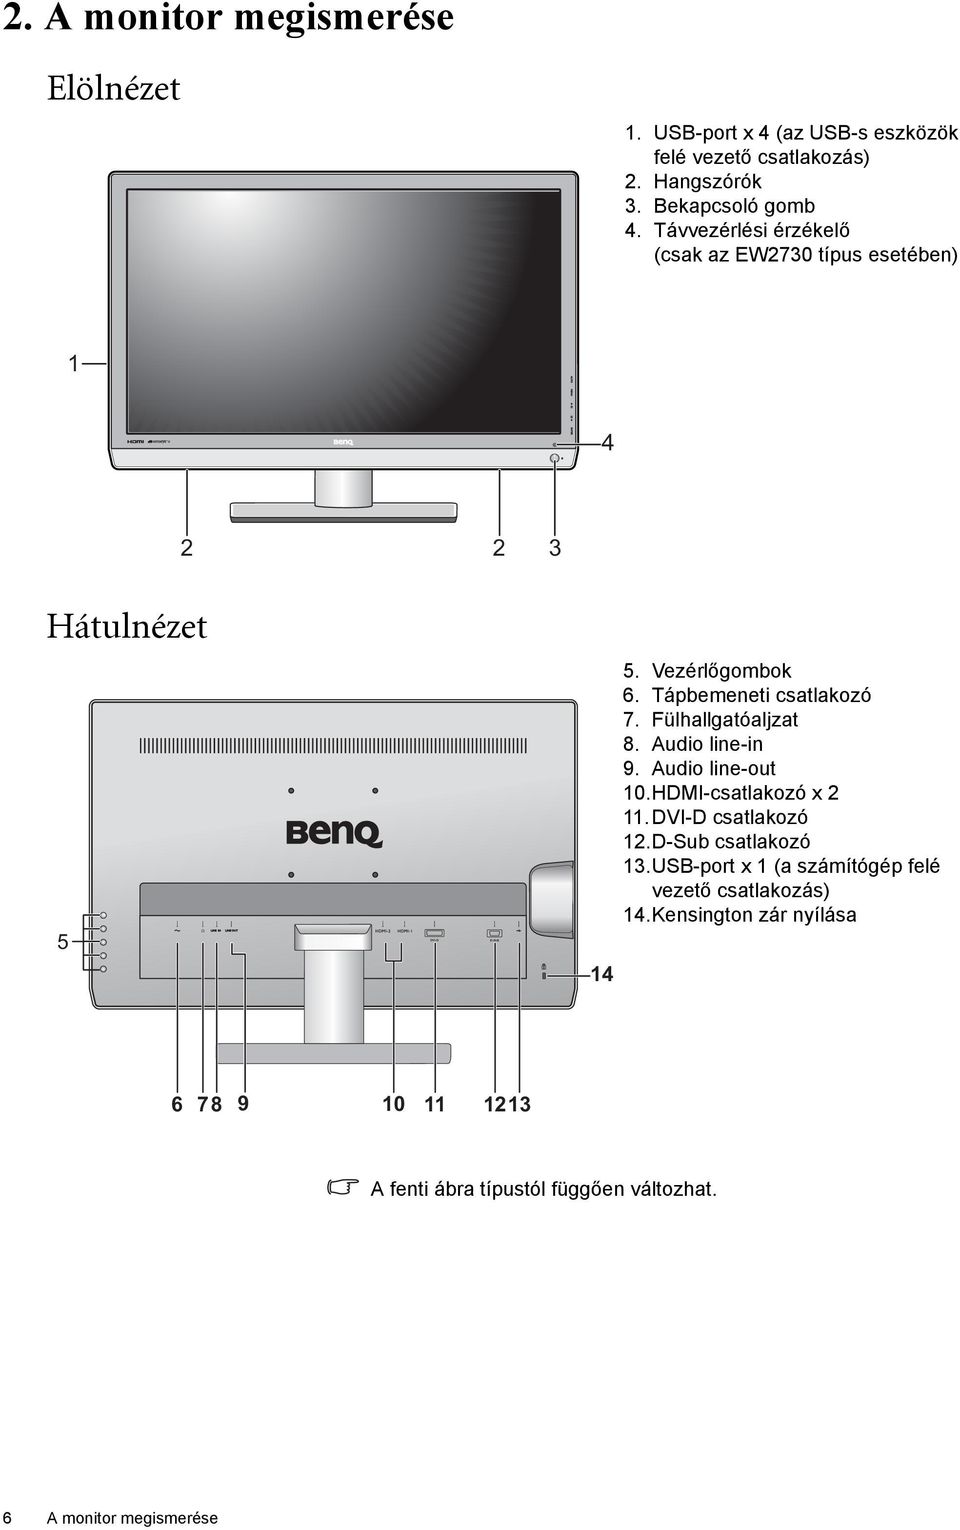 Fülhallgatóaljzat 8. Audio line-in 9. Audio line-out 10.HDMI-csatlakozó x 2 11. DVI-D csatlakozó 12.D-Sub csatlakozó 13.